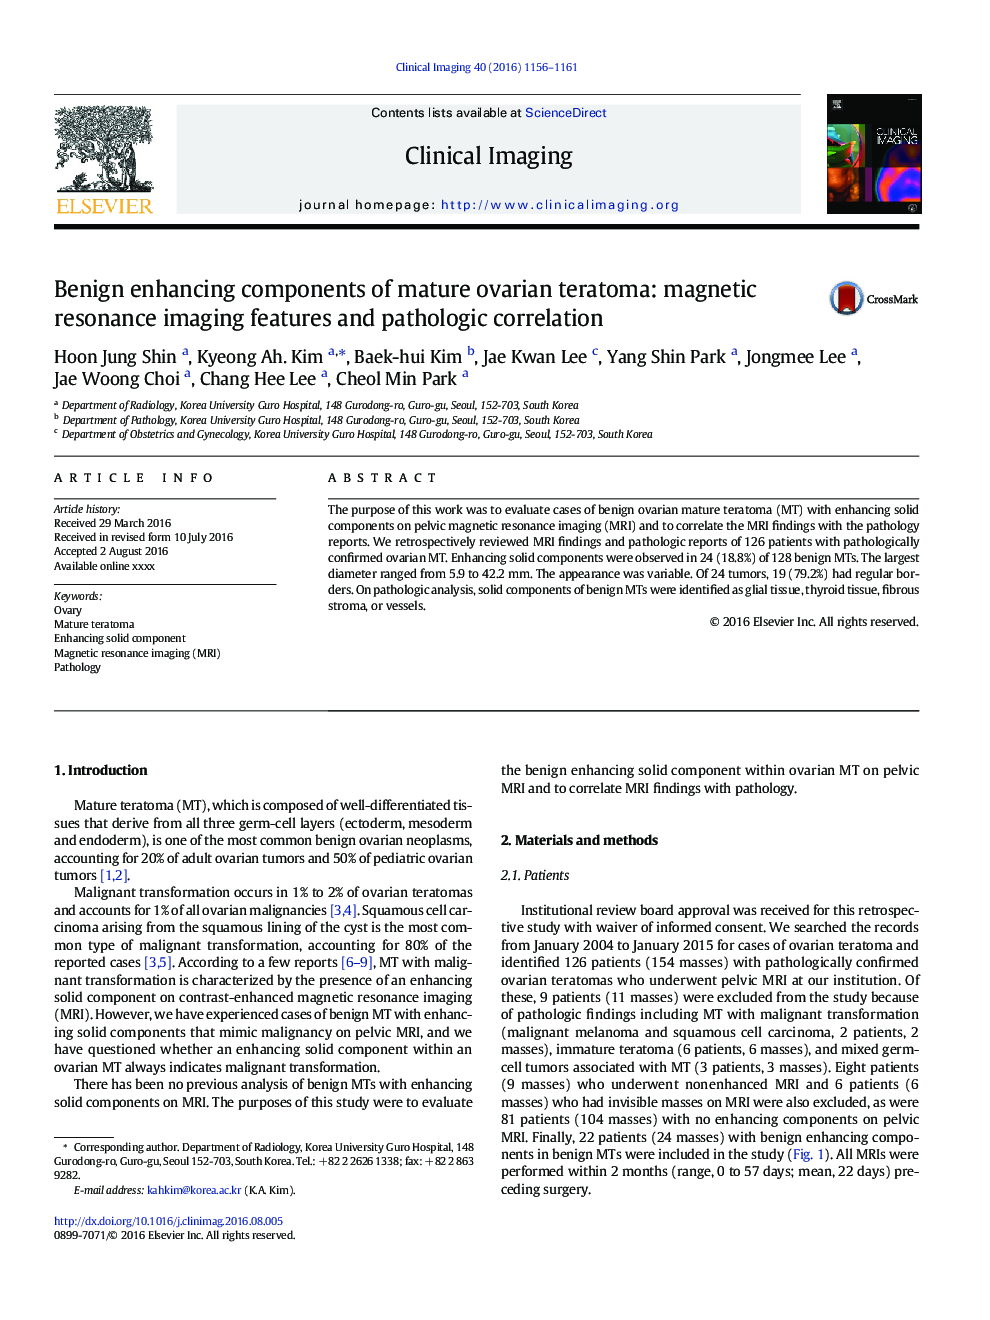 مزایای بهبودی تراتوم تخمدان بالغ: ویژگی های تصویربرداری رزونانس مغناطیسی و همبستگی پاتولوژیک 